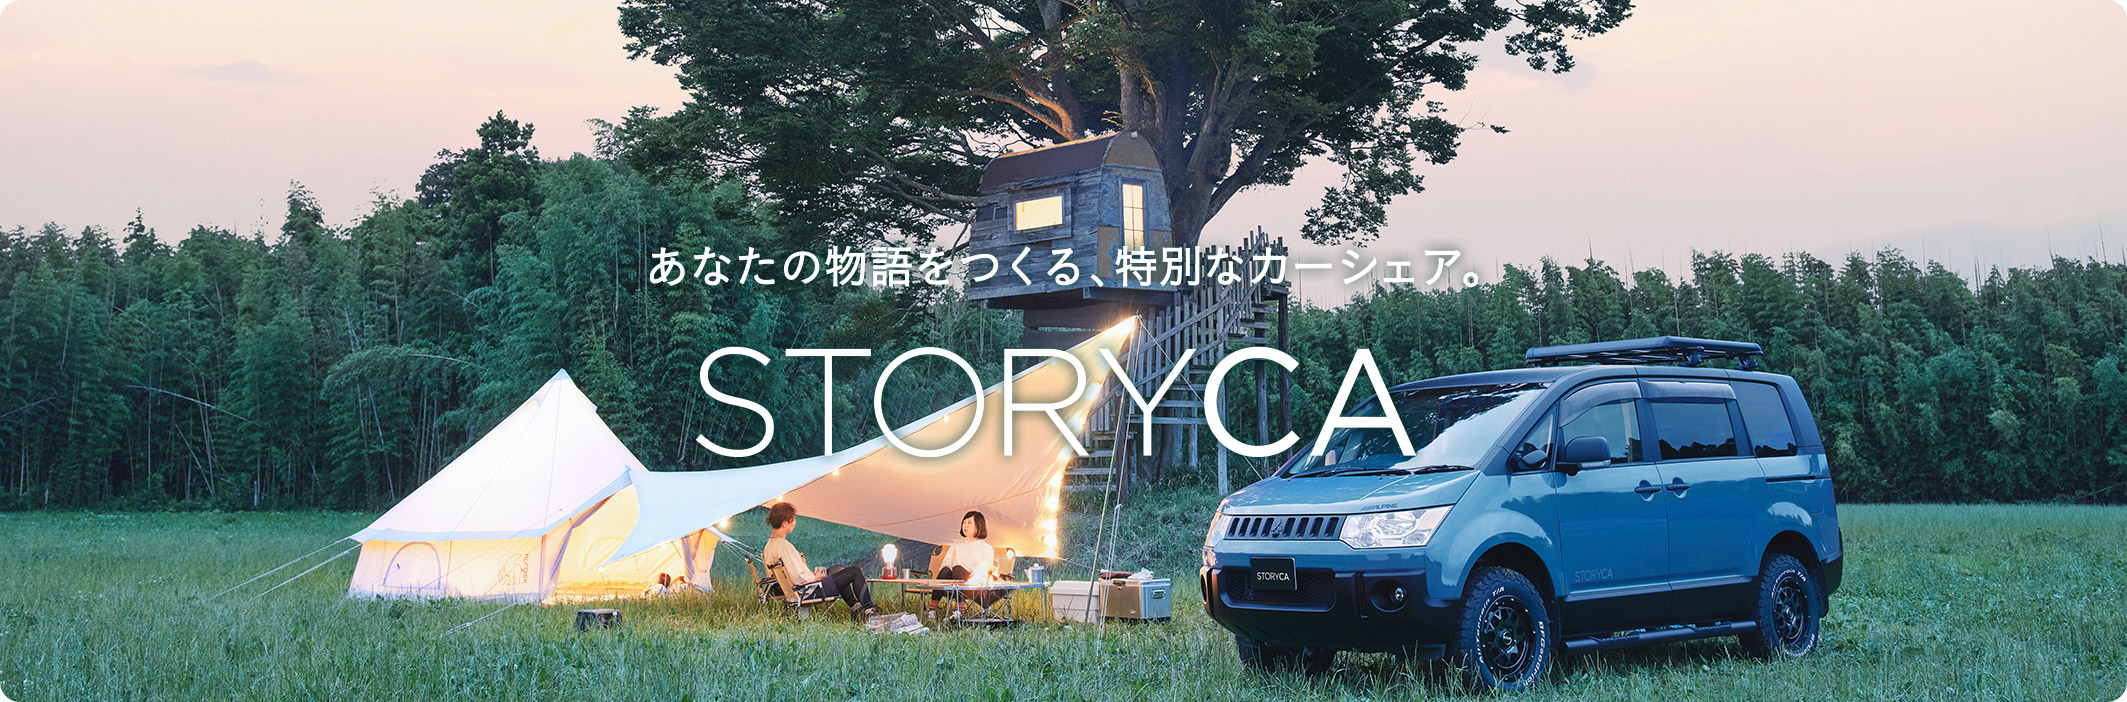 あなたの物語をつくる、特別なカーシェア。STORYCA